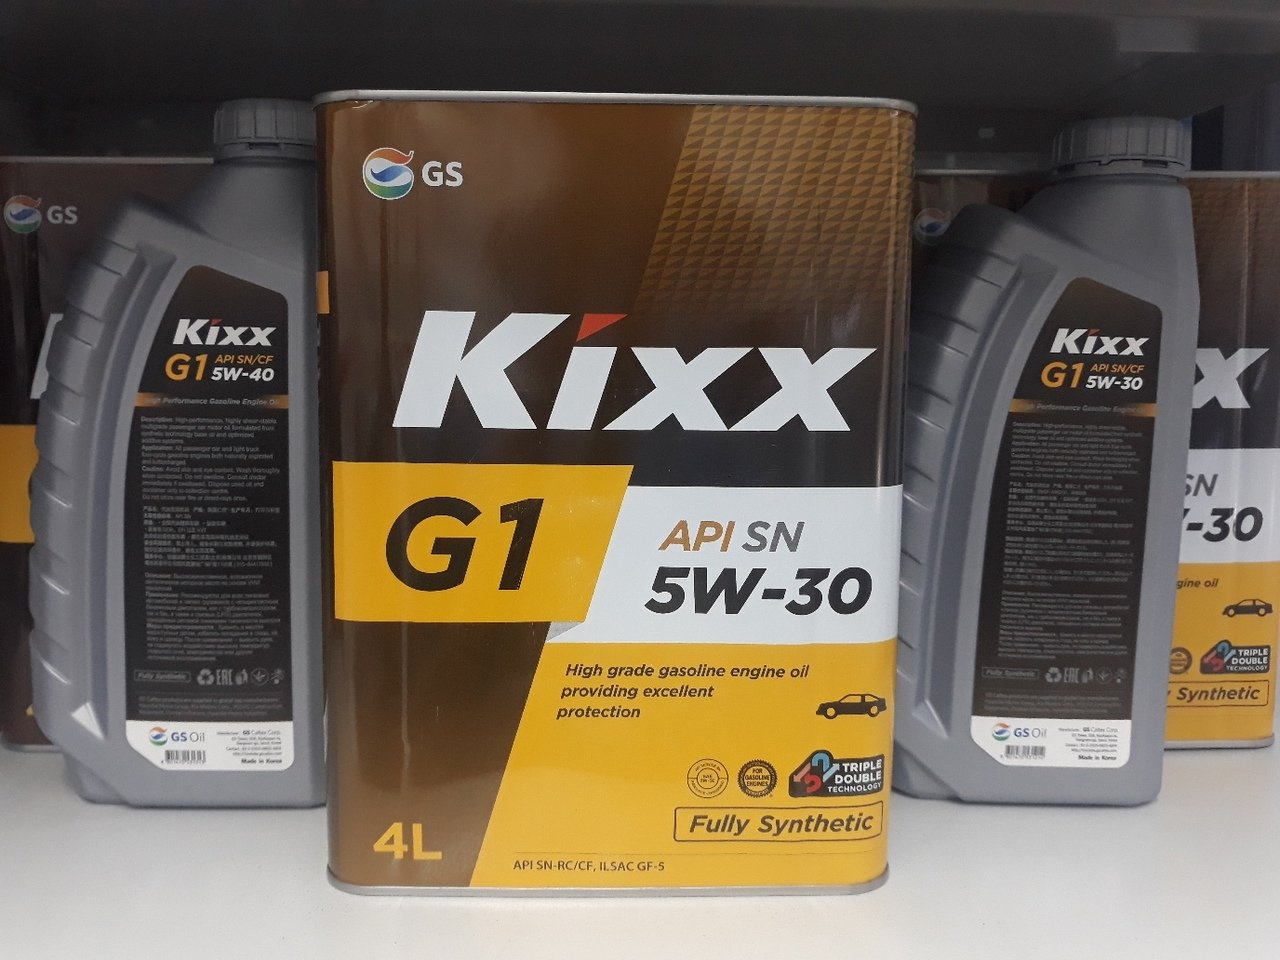 Acea a5 api sl масло. Kixx g1 5w-30 a5/b5. Kixx 5w30 a5/b5. Kixx g1 5w-30 API SN/CF ILSAC gf. Масло Kixx g1 5w30 API SP.